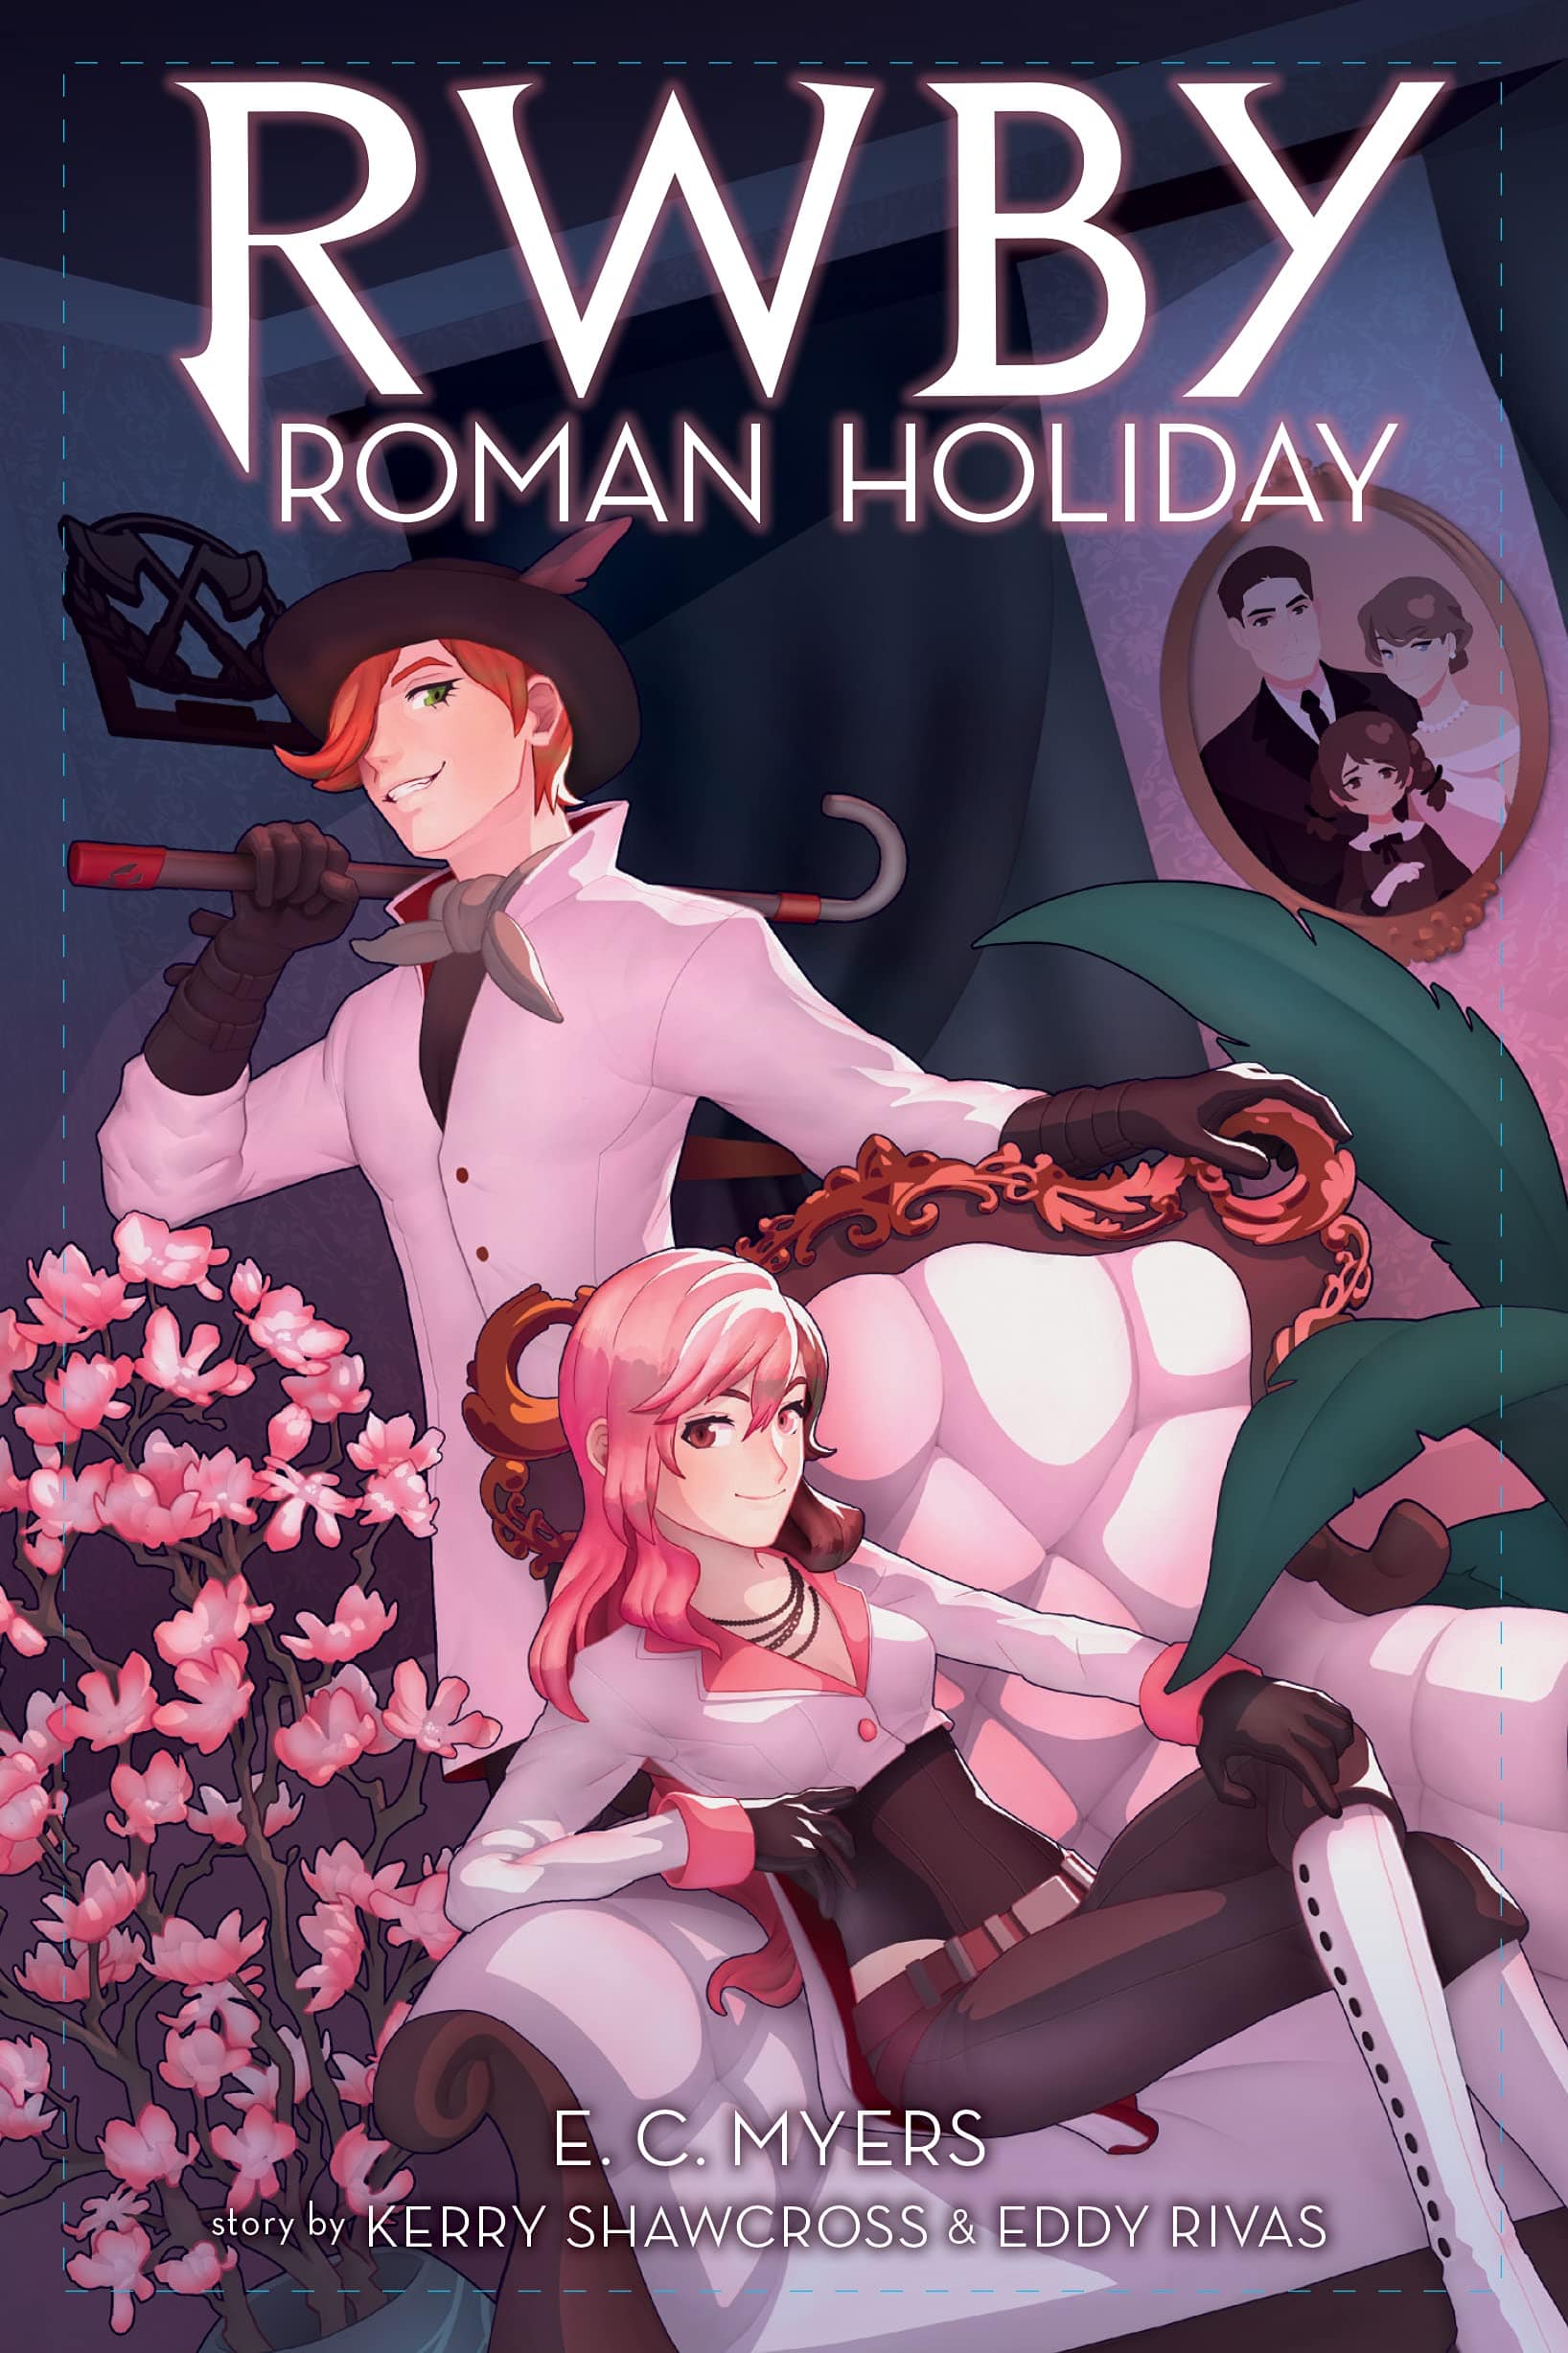 RWBY: Roman Holiday